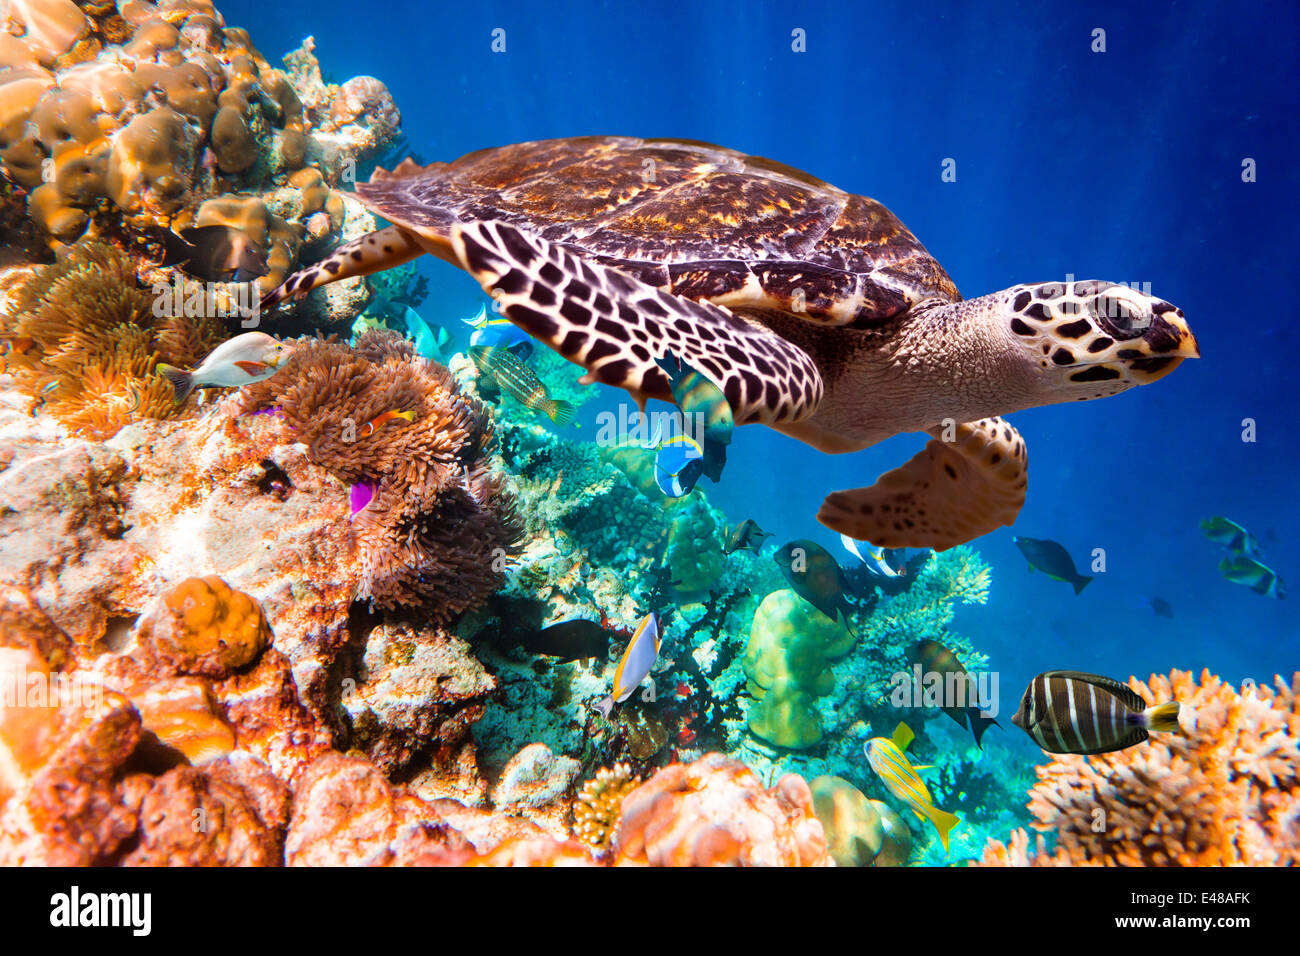 Echte Karettschildkröte - schwebt Eretmochelys Imbricata unter Wasser. Malediven Indischer Ozean Korallenriff. Stockfoto